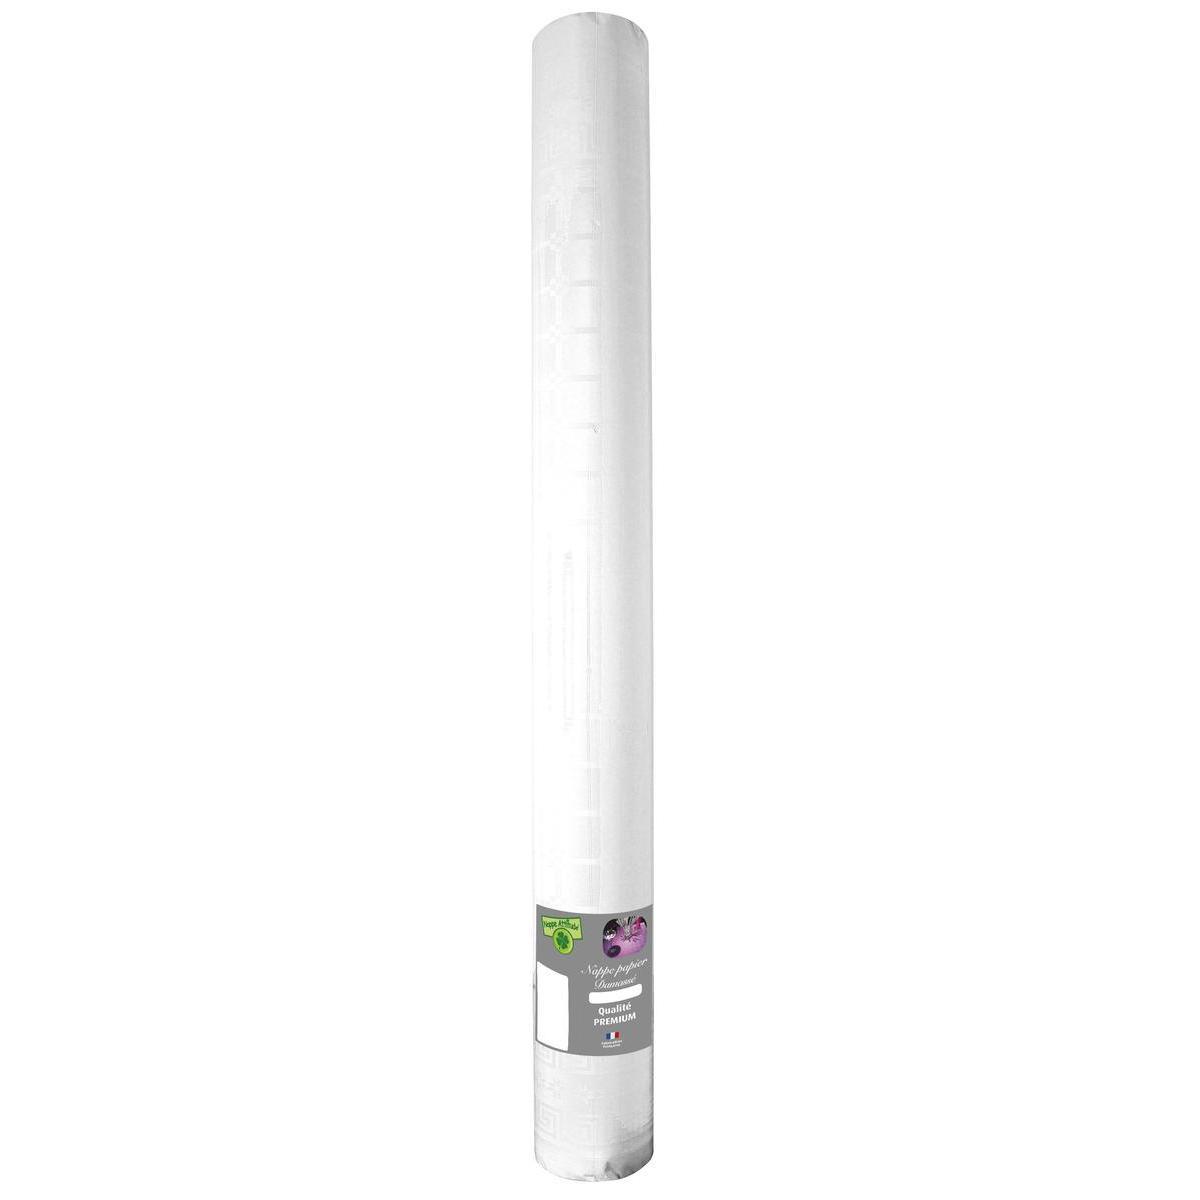 Nappe effet damassé - Papier - 100 m x 120 cm - Blanc